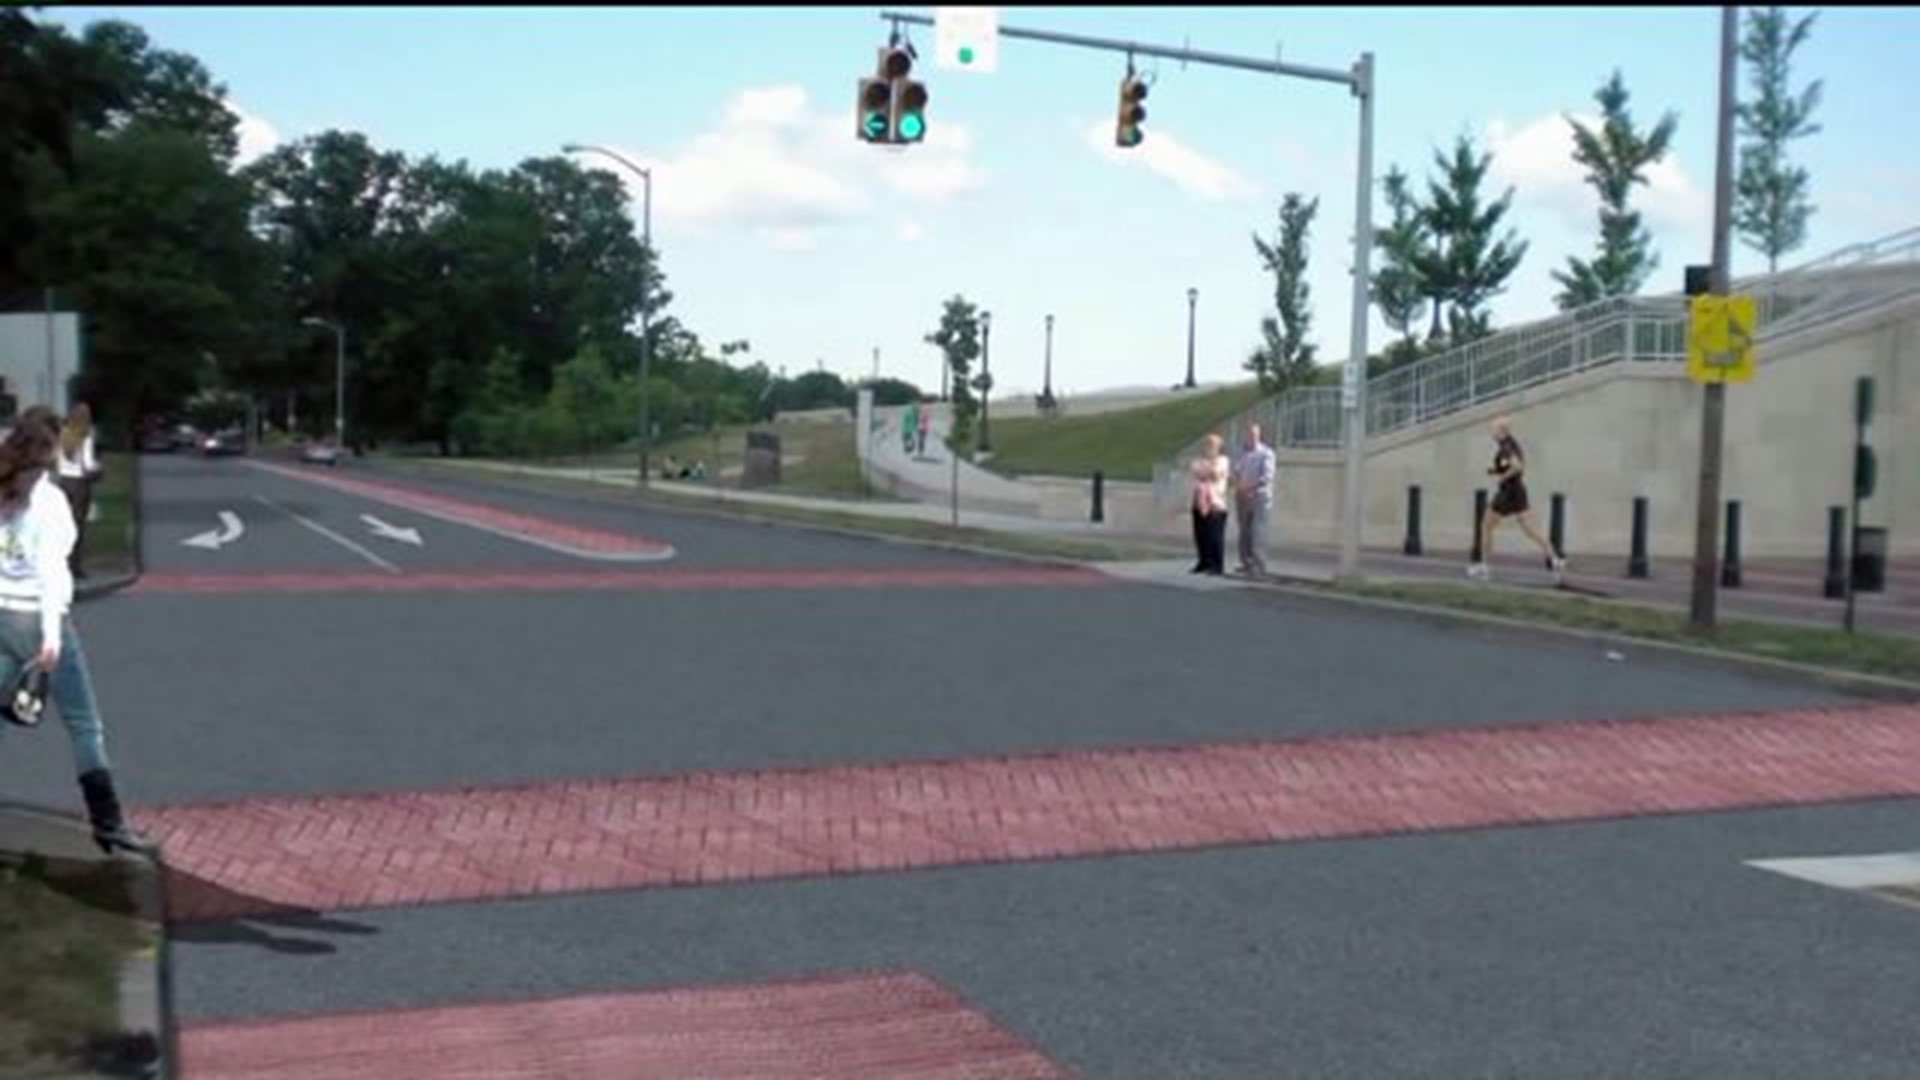 New Crosswalks Planned for River Street in Wilkes-Barre